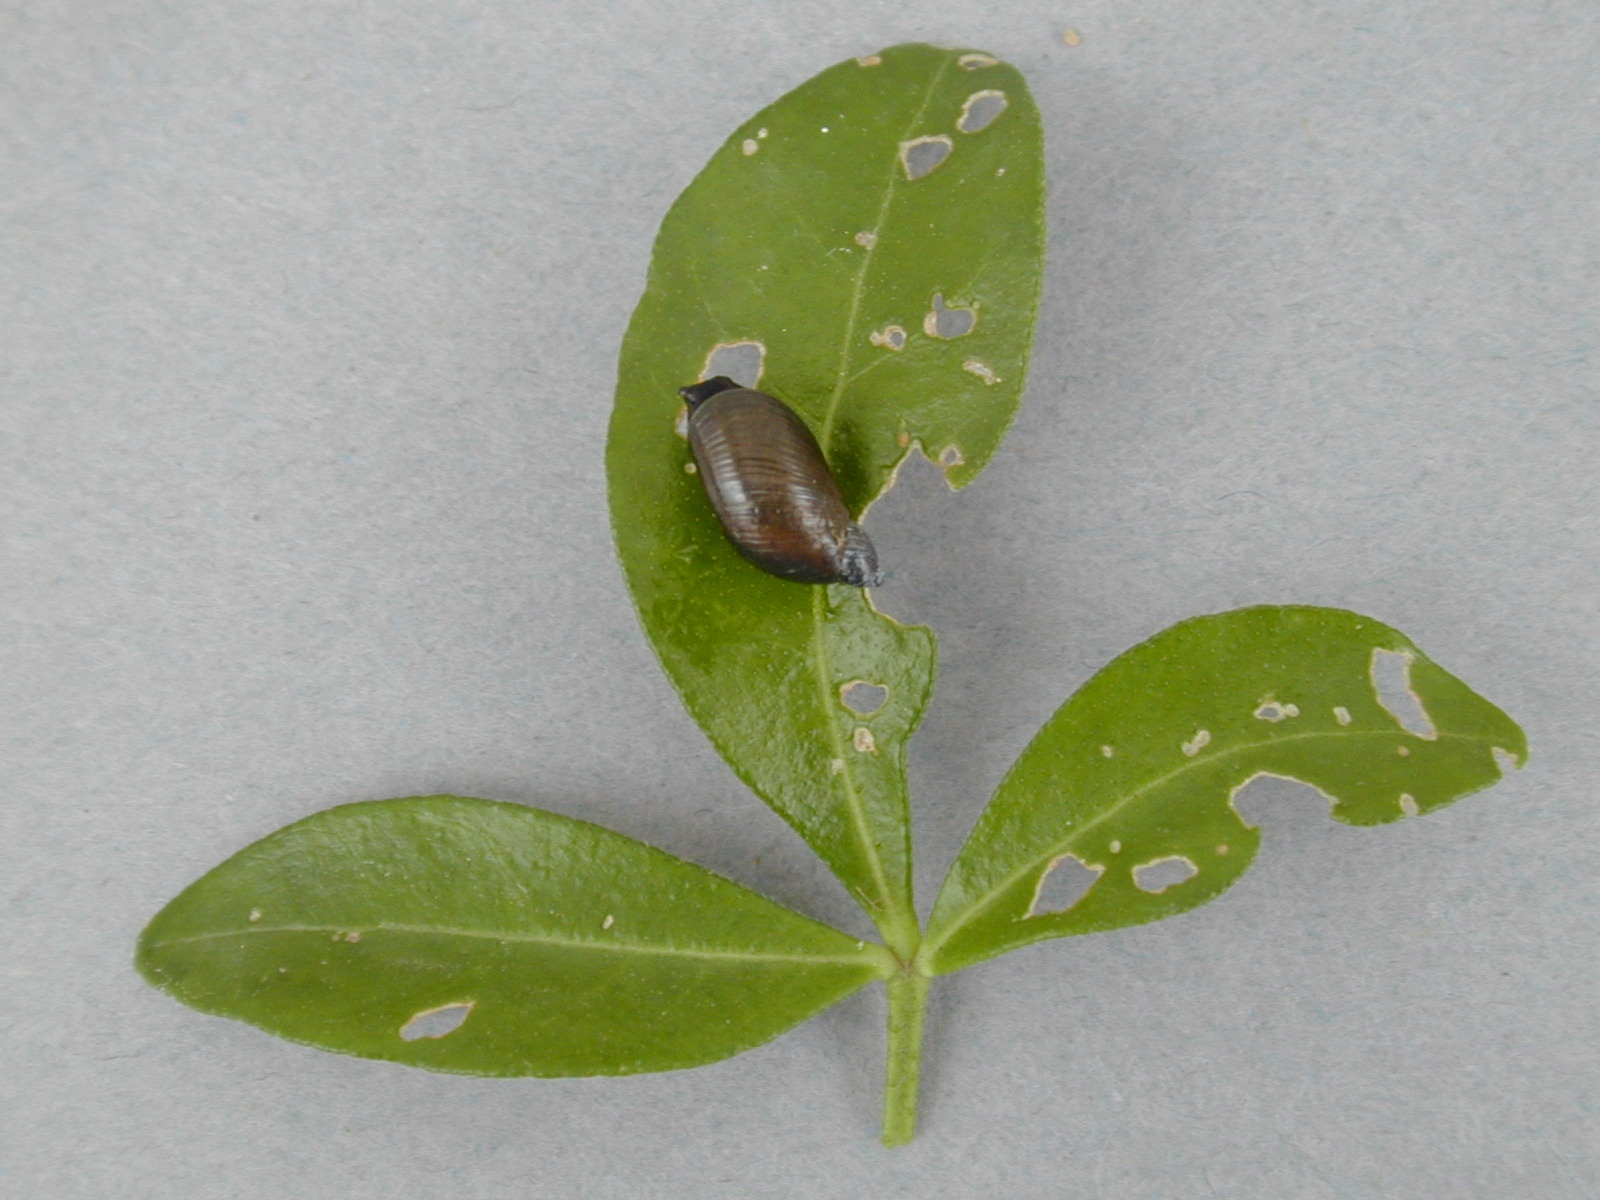 Oxyloma elegans on young choisya leaf. Courtesy and © ADAS RSK.